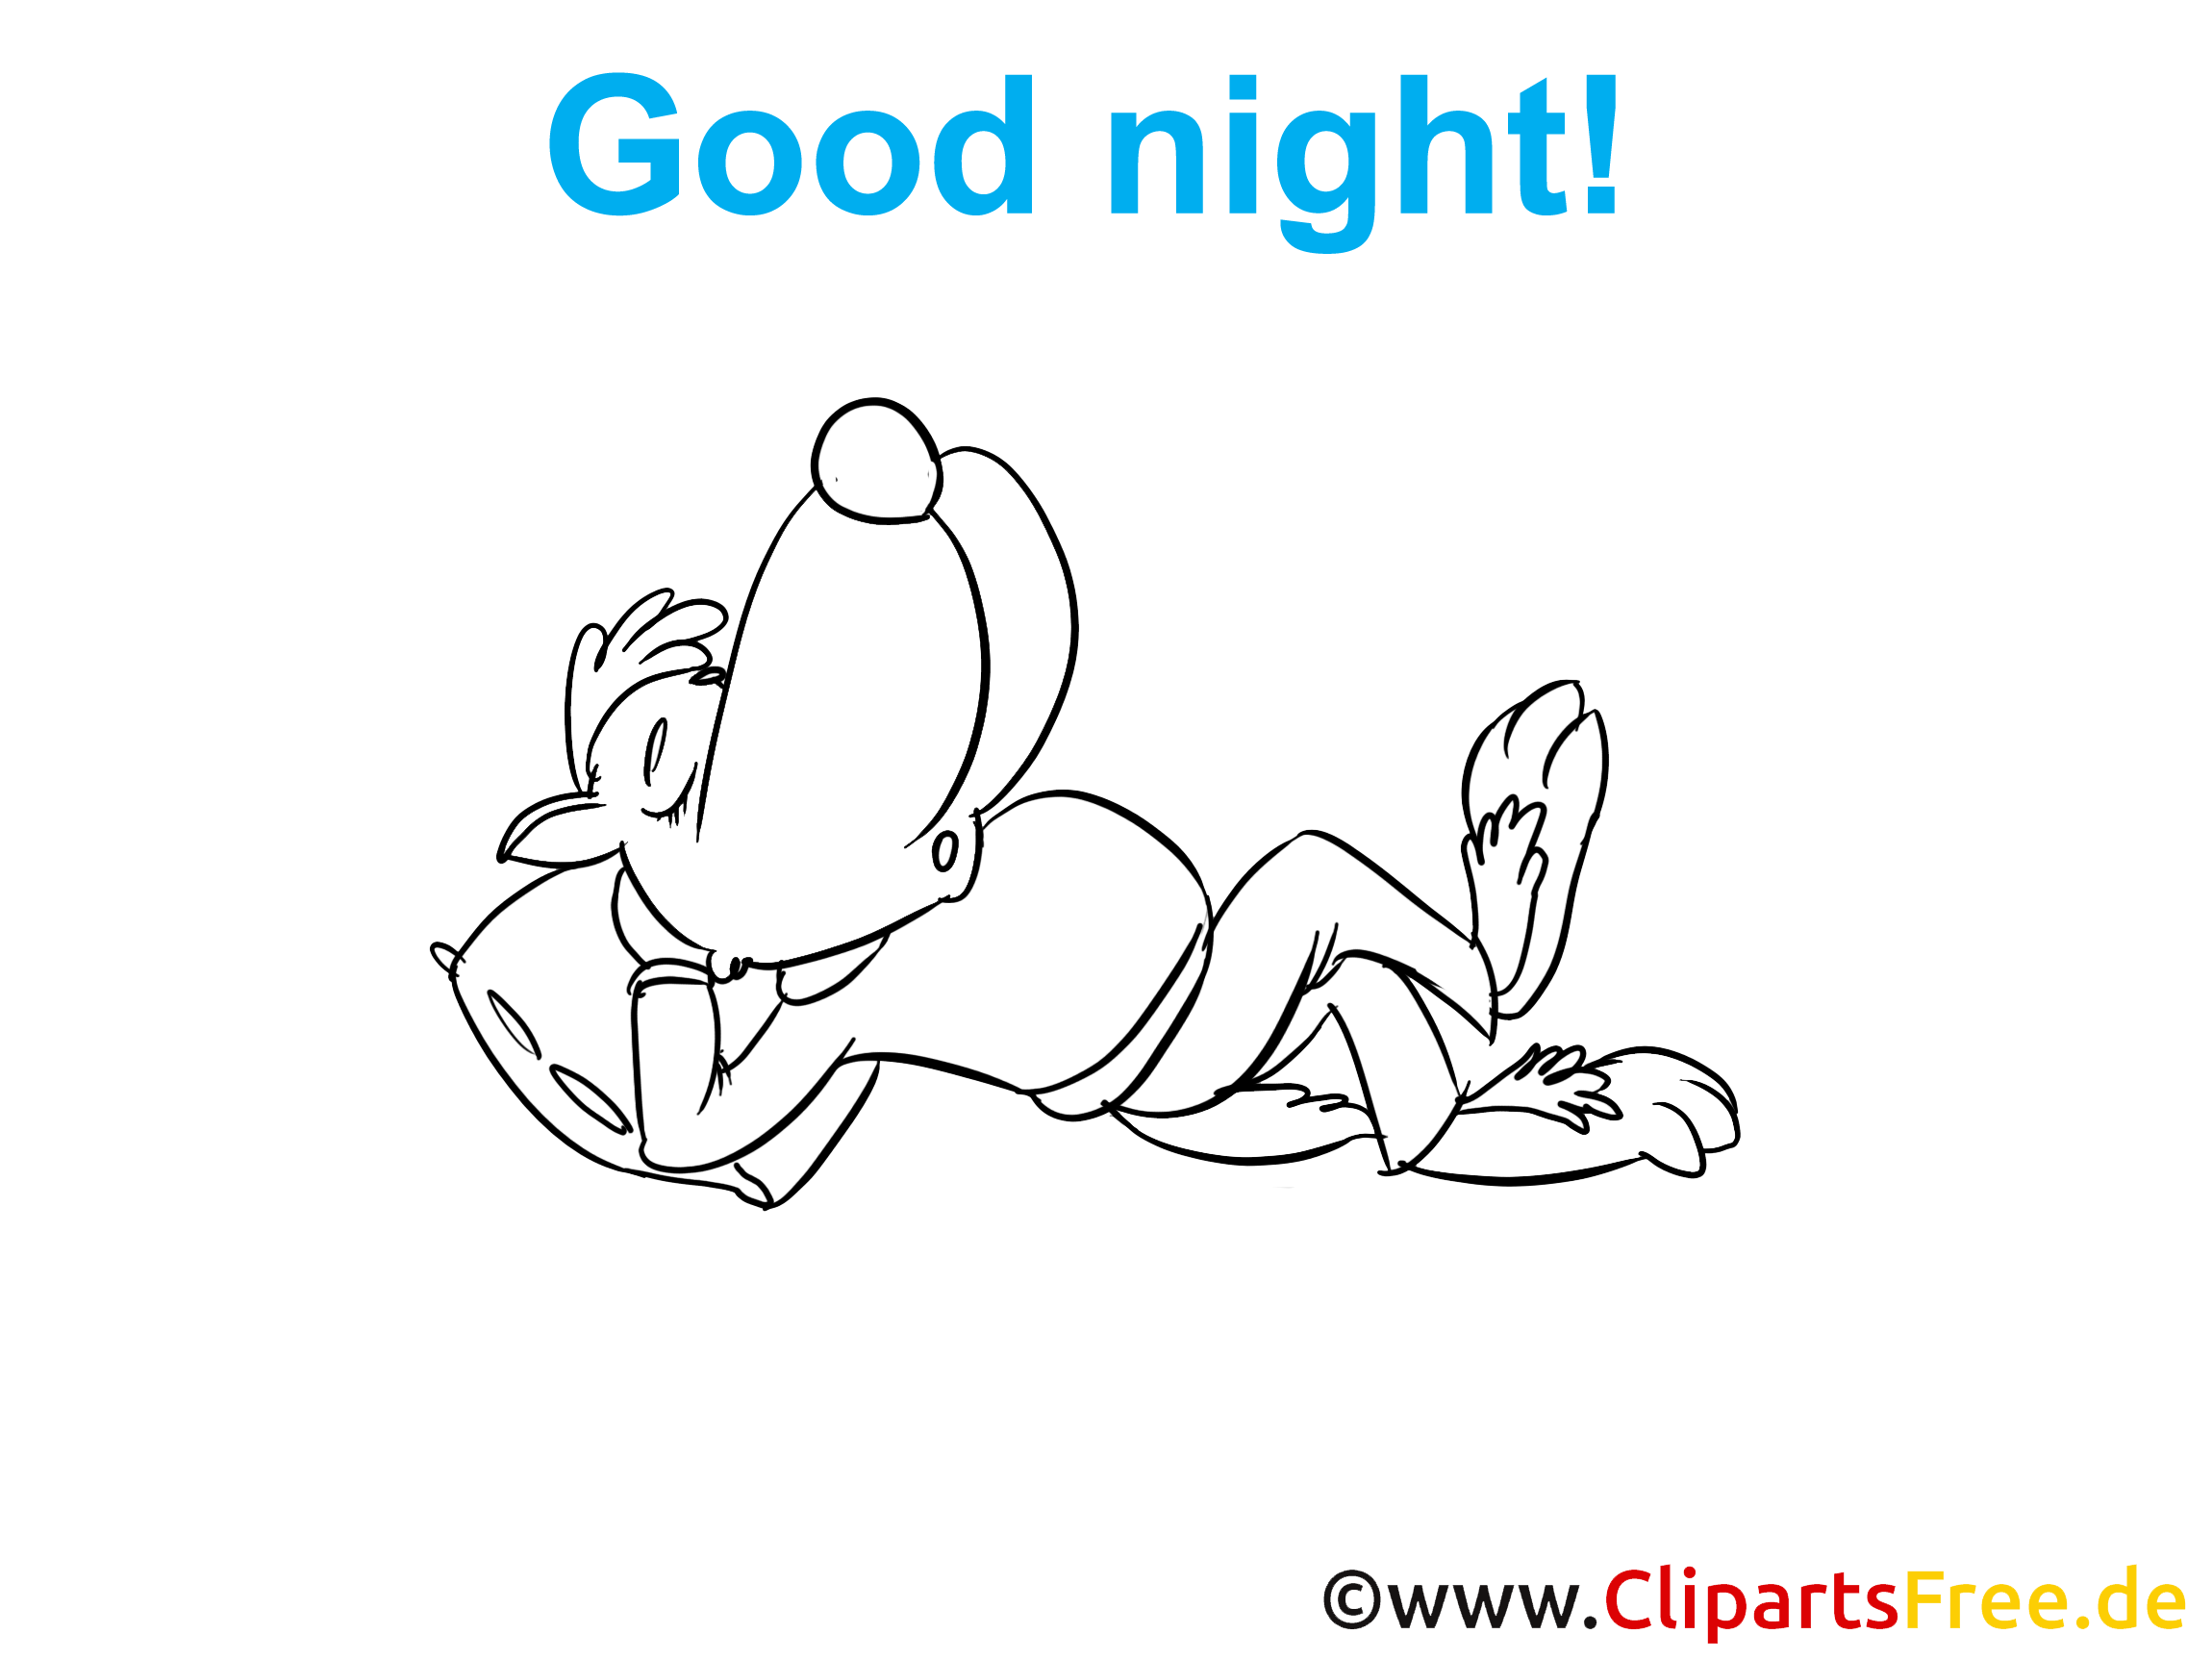 Loup dessin à colorier - Bonne nuit image